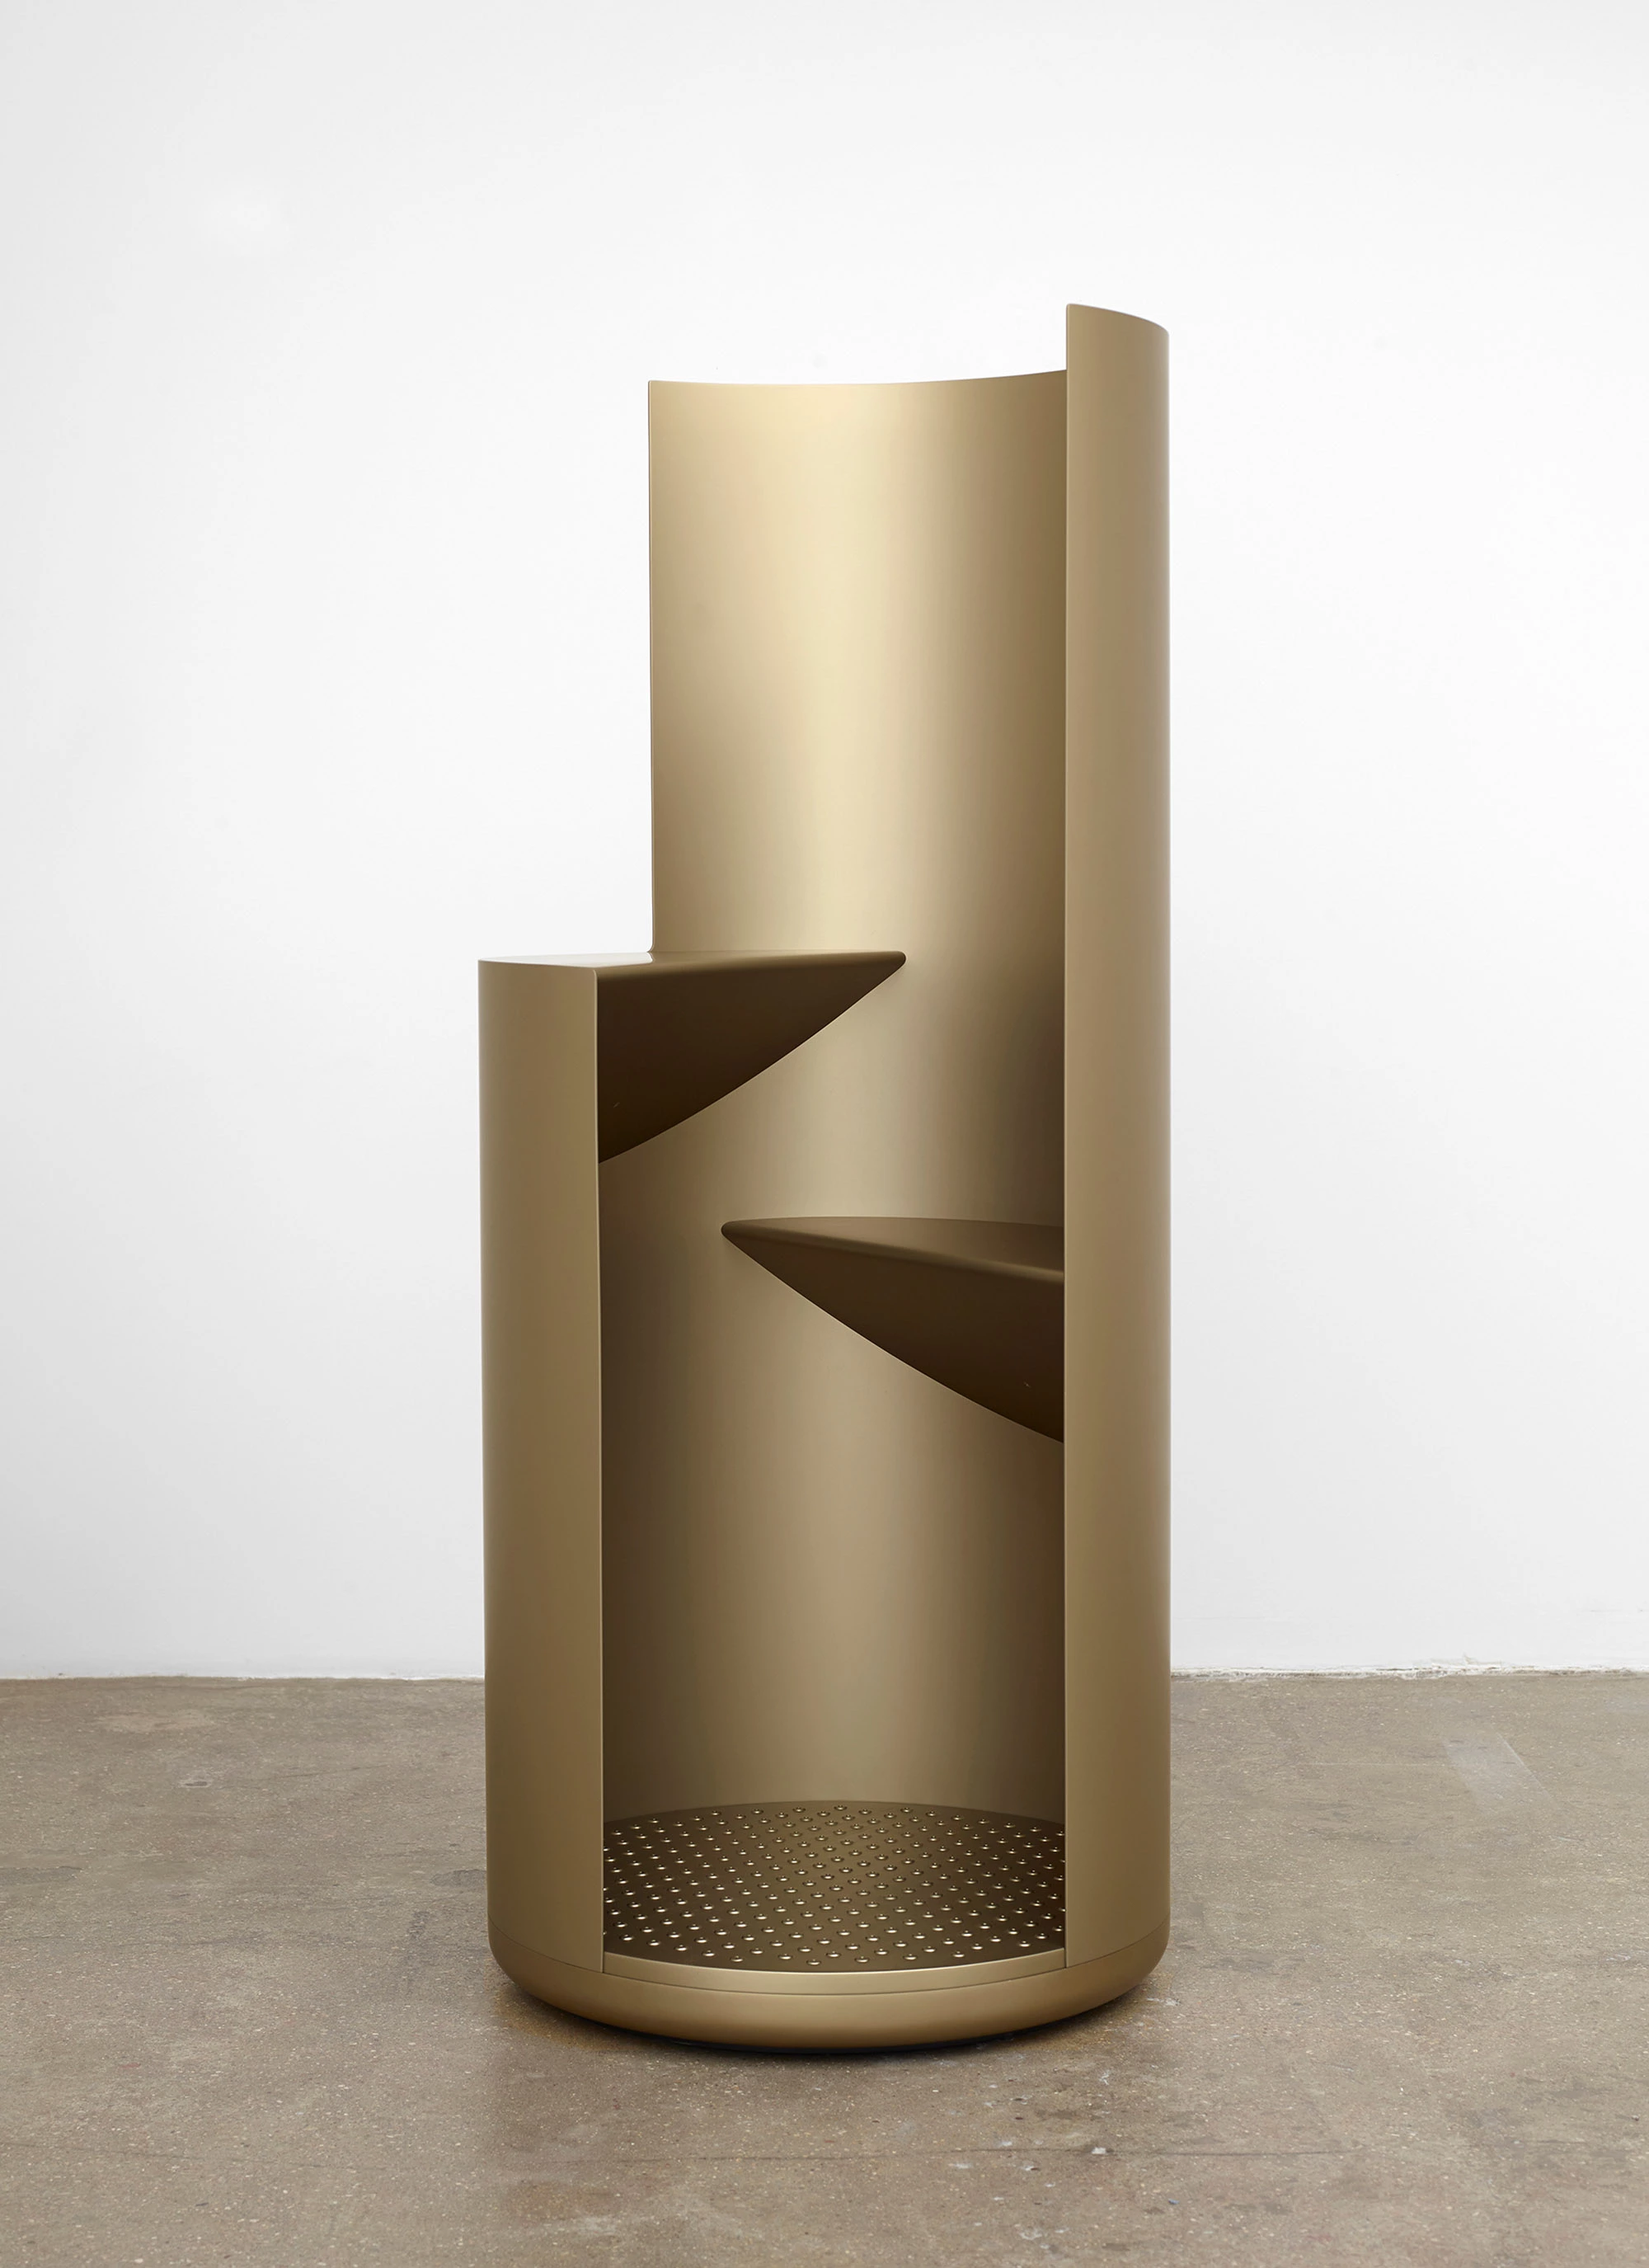 Hieronymus Metal - Konstantin Grcic - Seating - Galerie kreo